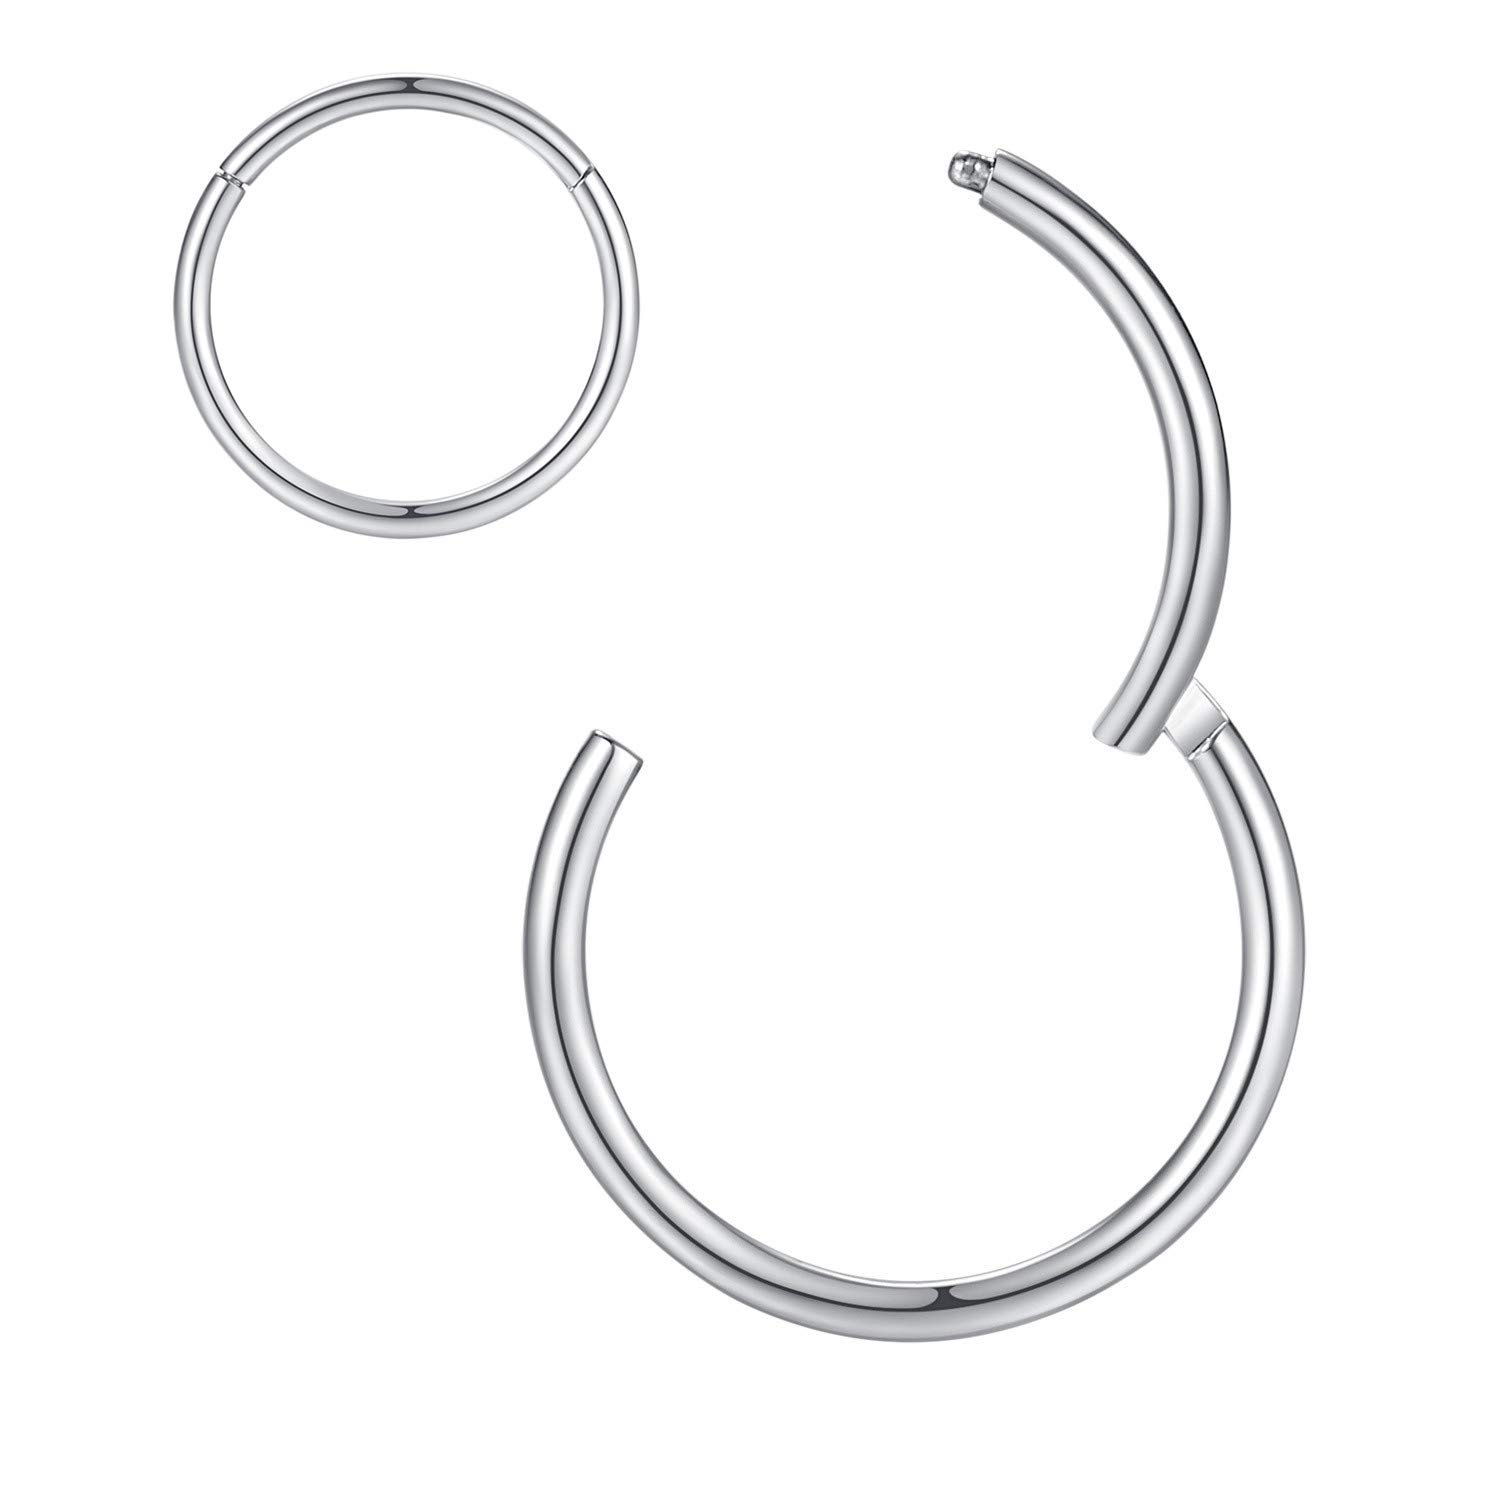 ORANGELOVE Silver Nose Rings 16 gauge Nose Ring Hoop Earrings For Women 16g Nose Hoop Septum Jewelry Surgical Steel Septum Ring Septum clic